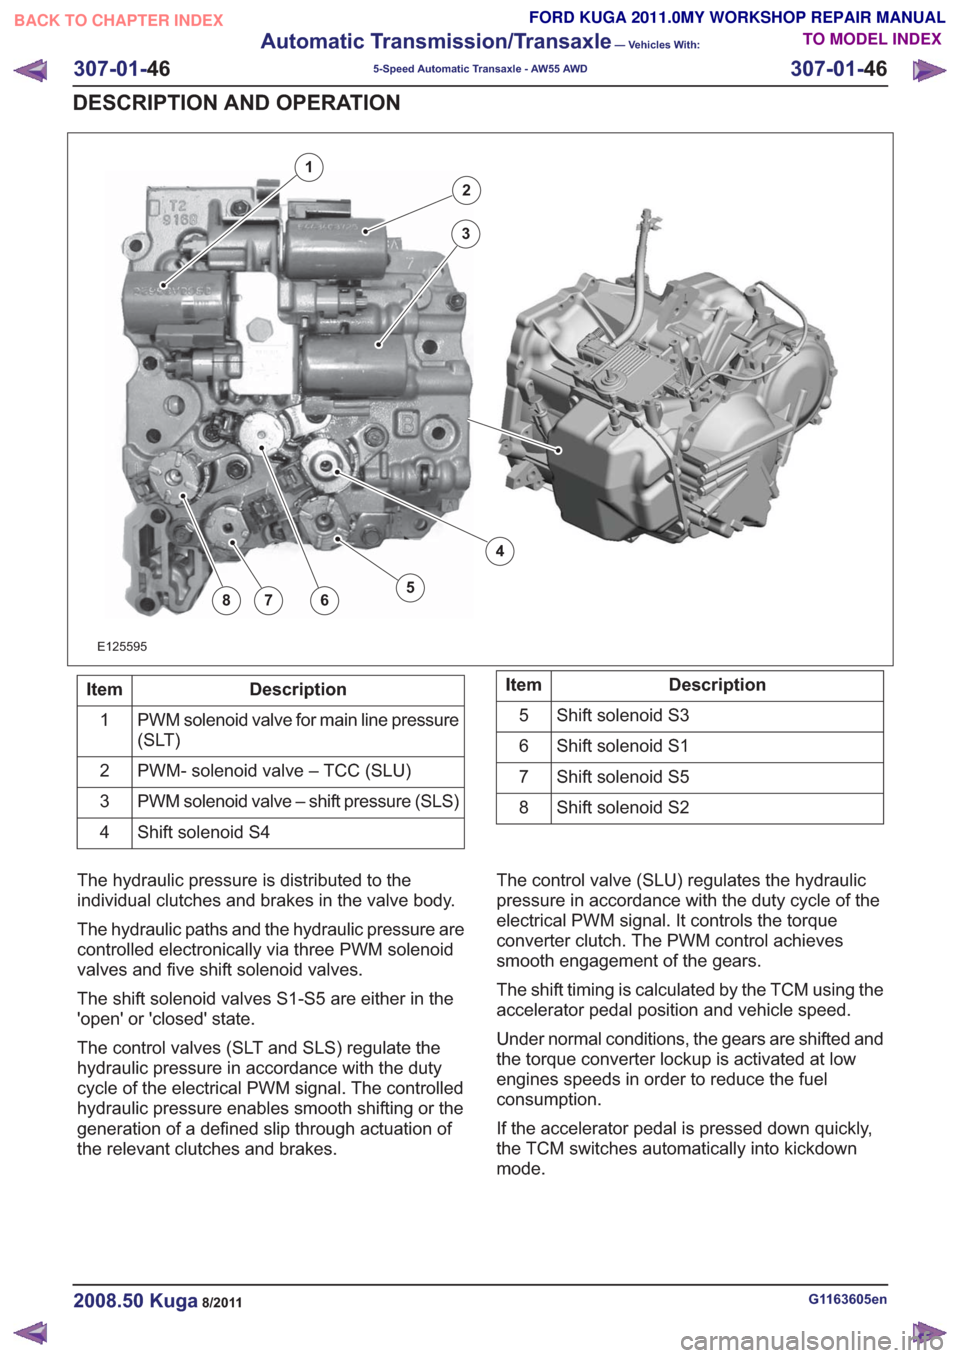 FORD KUGA 2011 1.G User Guide E125595
2
3
4
5678
1
Description
Item
PWM solenoid valve for main line pressure
(SLT)
1
PWM- solenoid valve – TCC (SLU)
2
PWM solenoid valve – shift pressure (SLS)
3
Shift solenoid S4
4Description